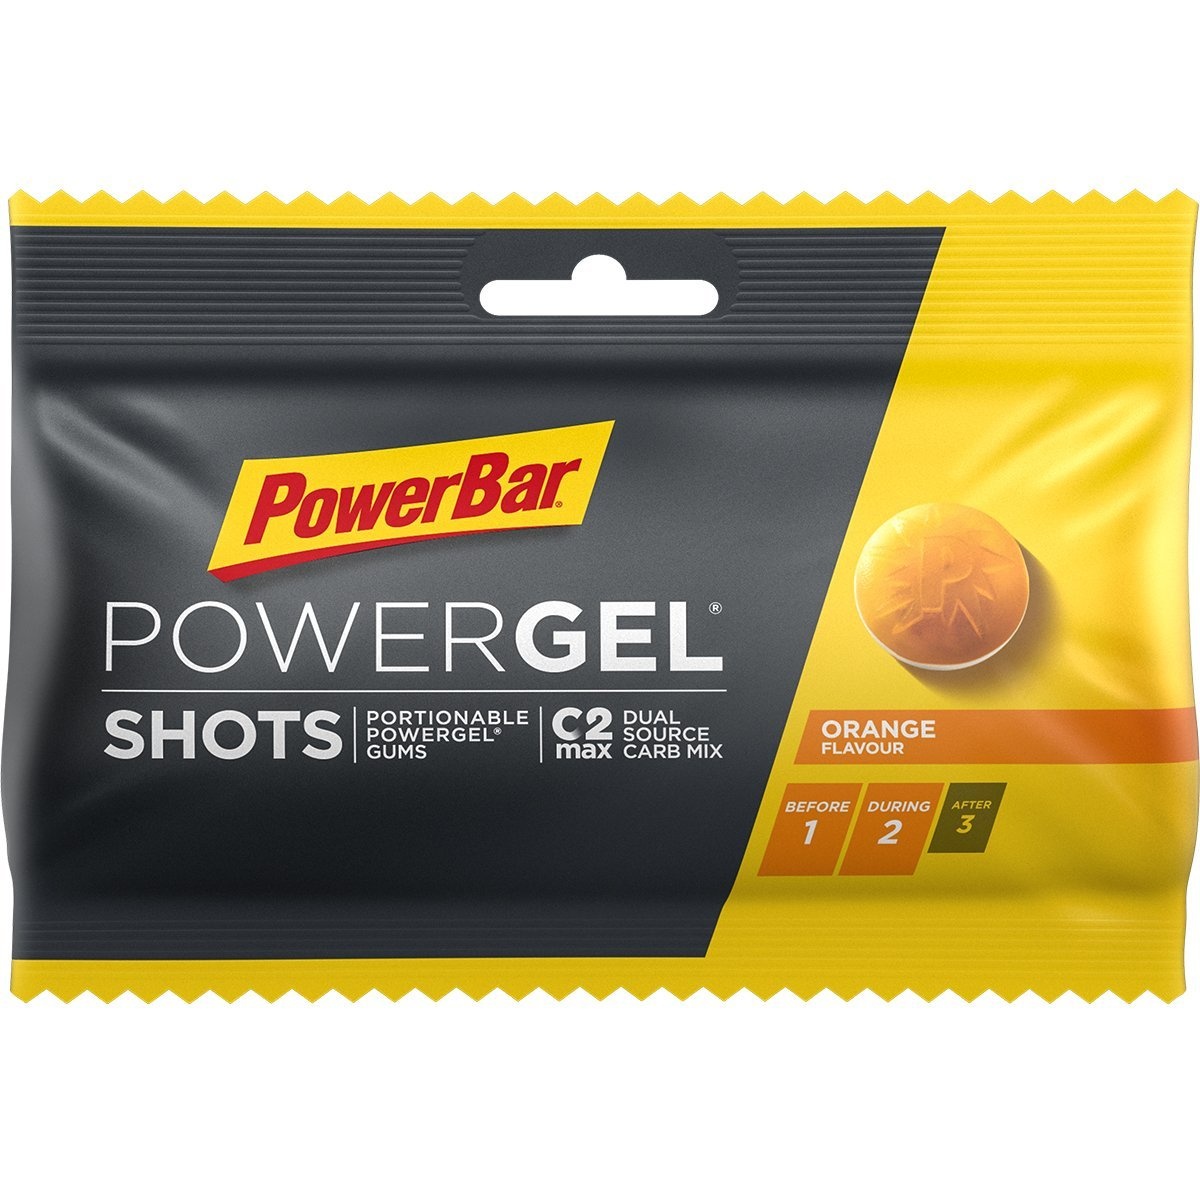 Tilbehør - Energiprodukter - Energigel - PowerBar PowerGel shots - Vingummi - Appelsin